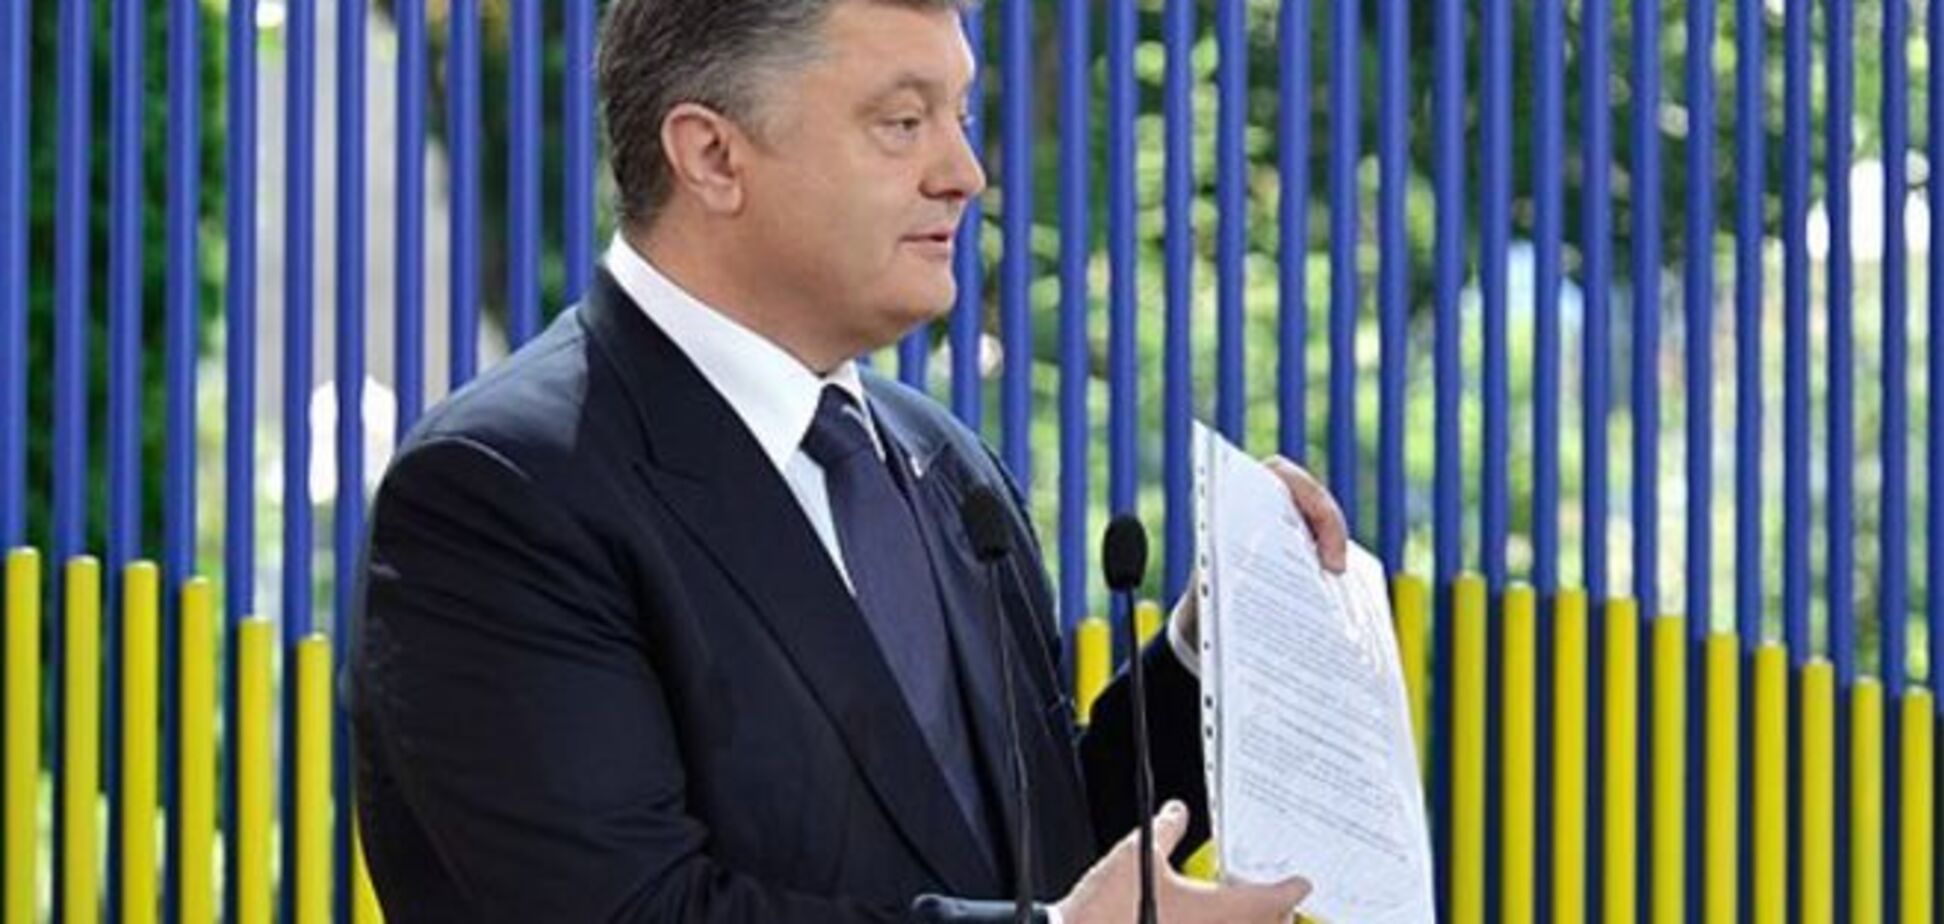 Конфиденциальное соглашение Порошенко-Кличко: текст документа